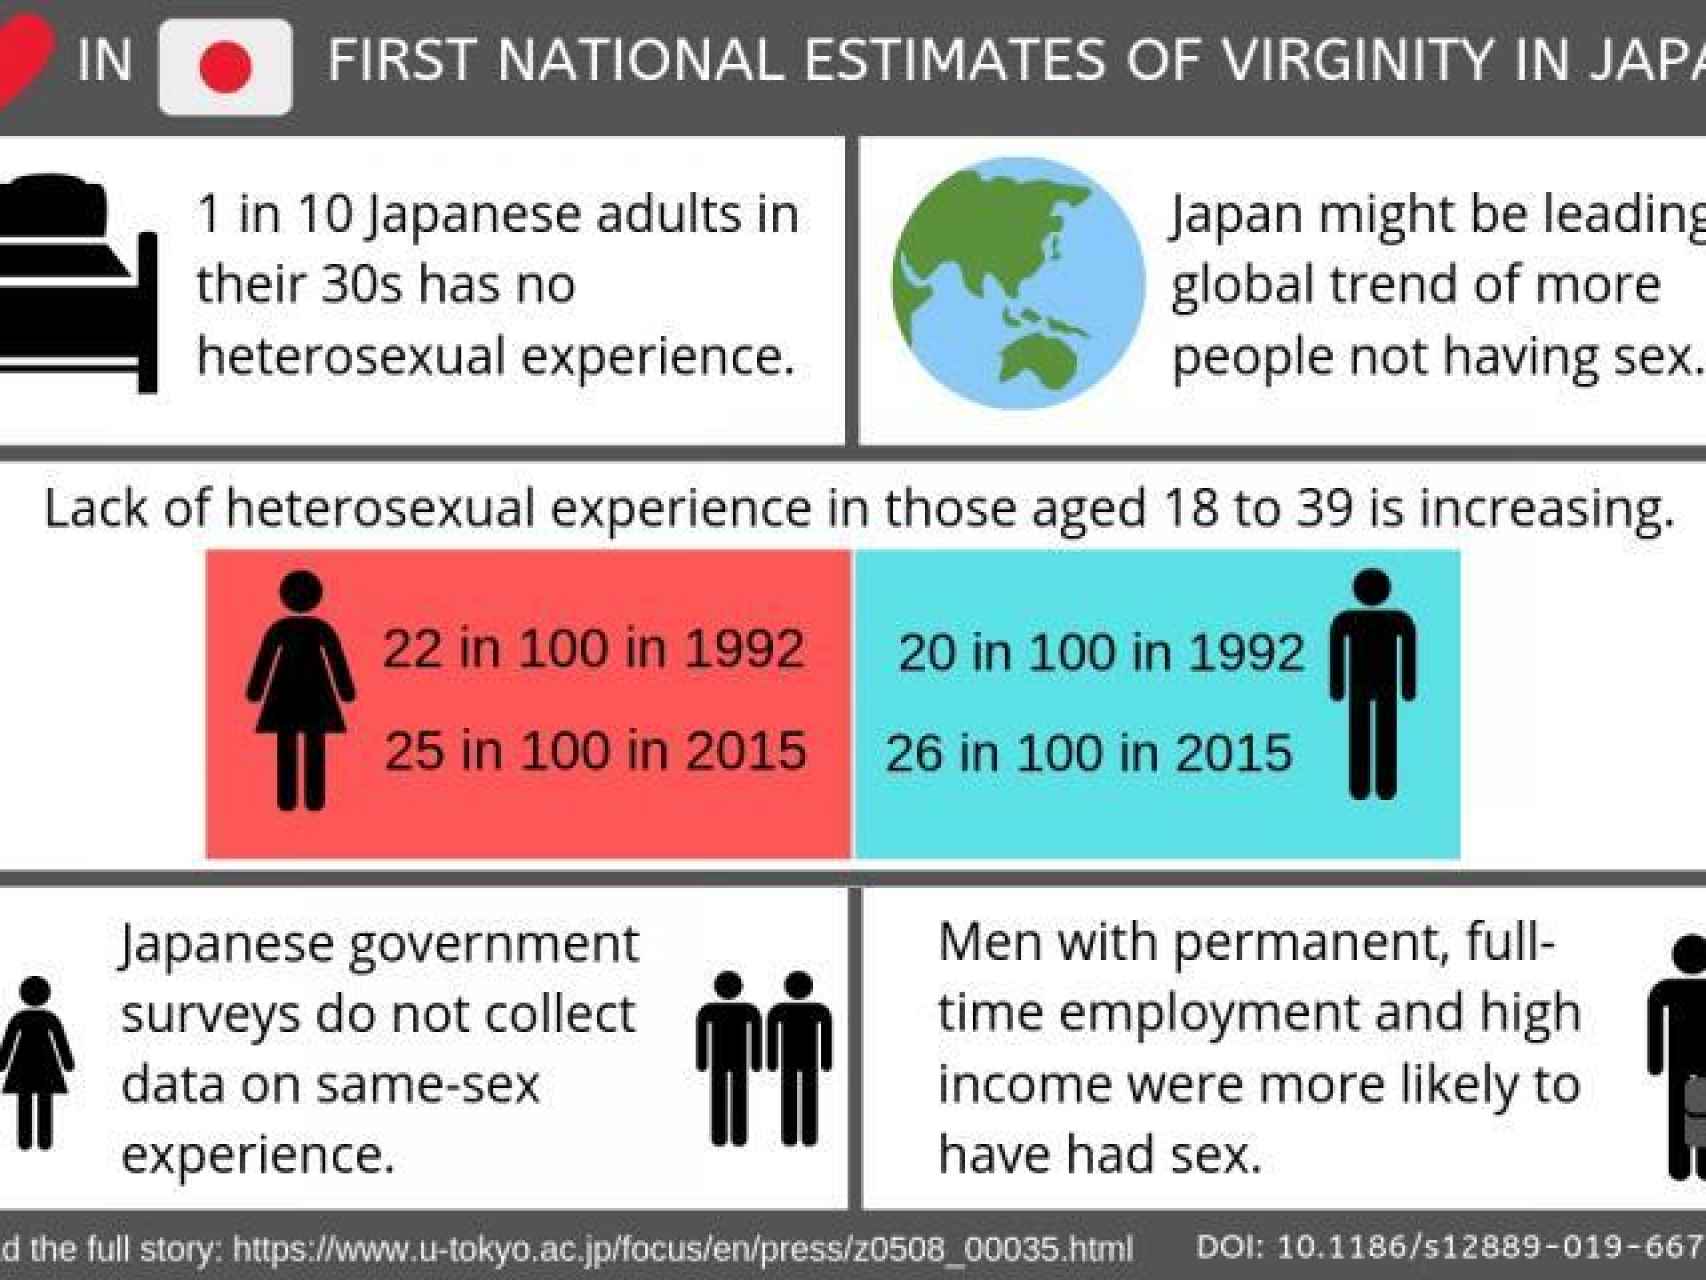 Gráfico de la Universidad de Tokio sobre la virginidad japonesa.